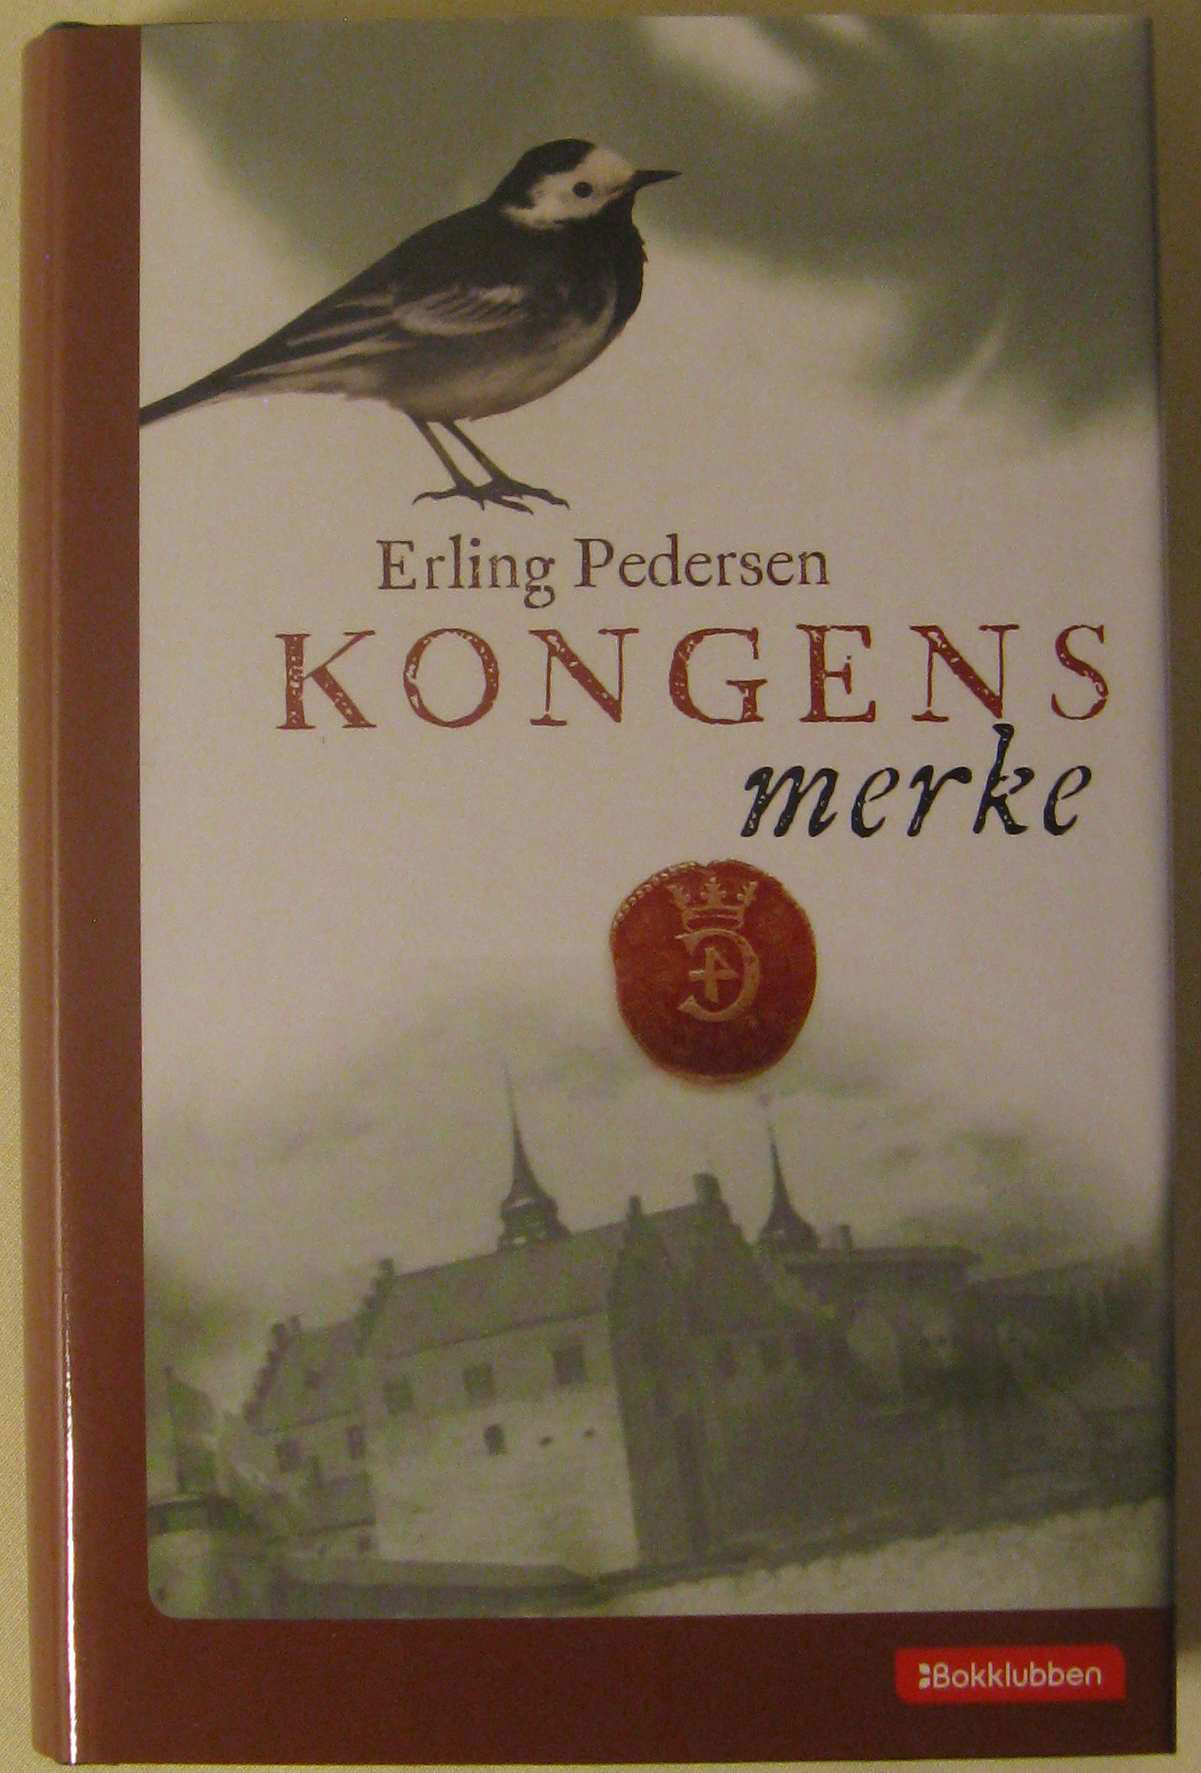 Kongens merke, De norske Bokklubbene 2007